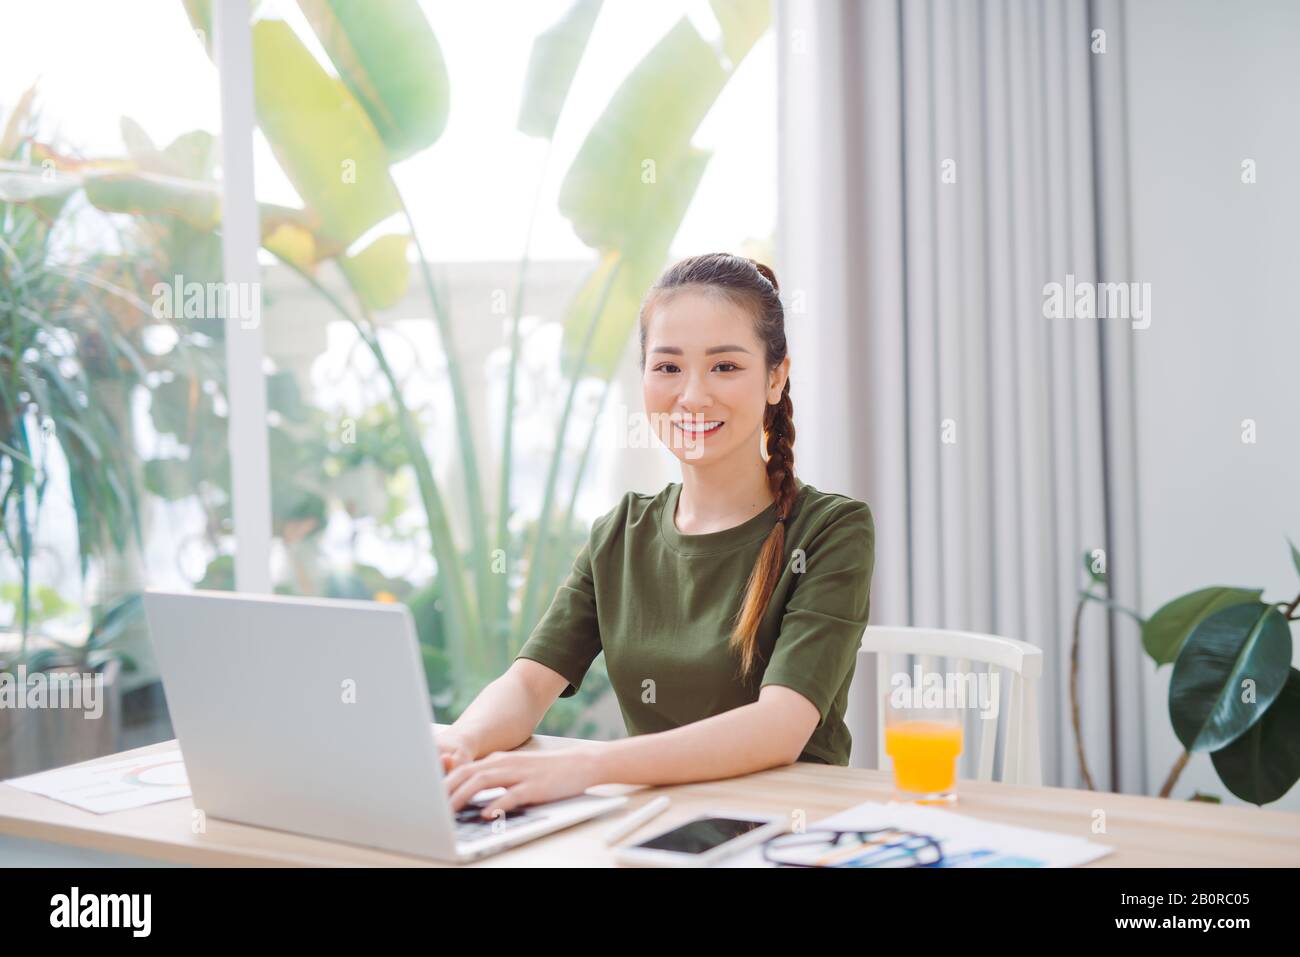 femme assise à la table à la maison travaillant à l'aide d'un ordinateur portable avec un visage heureux debout et souriant avec un sourire confiant montrant les dents Banque D'Images